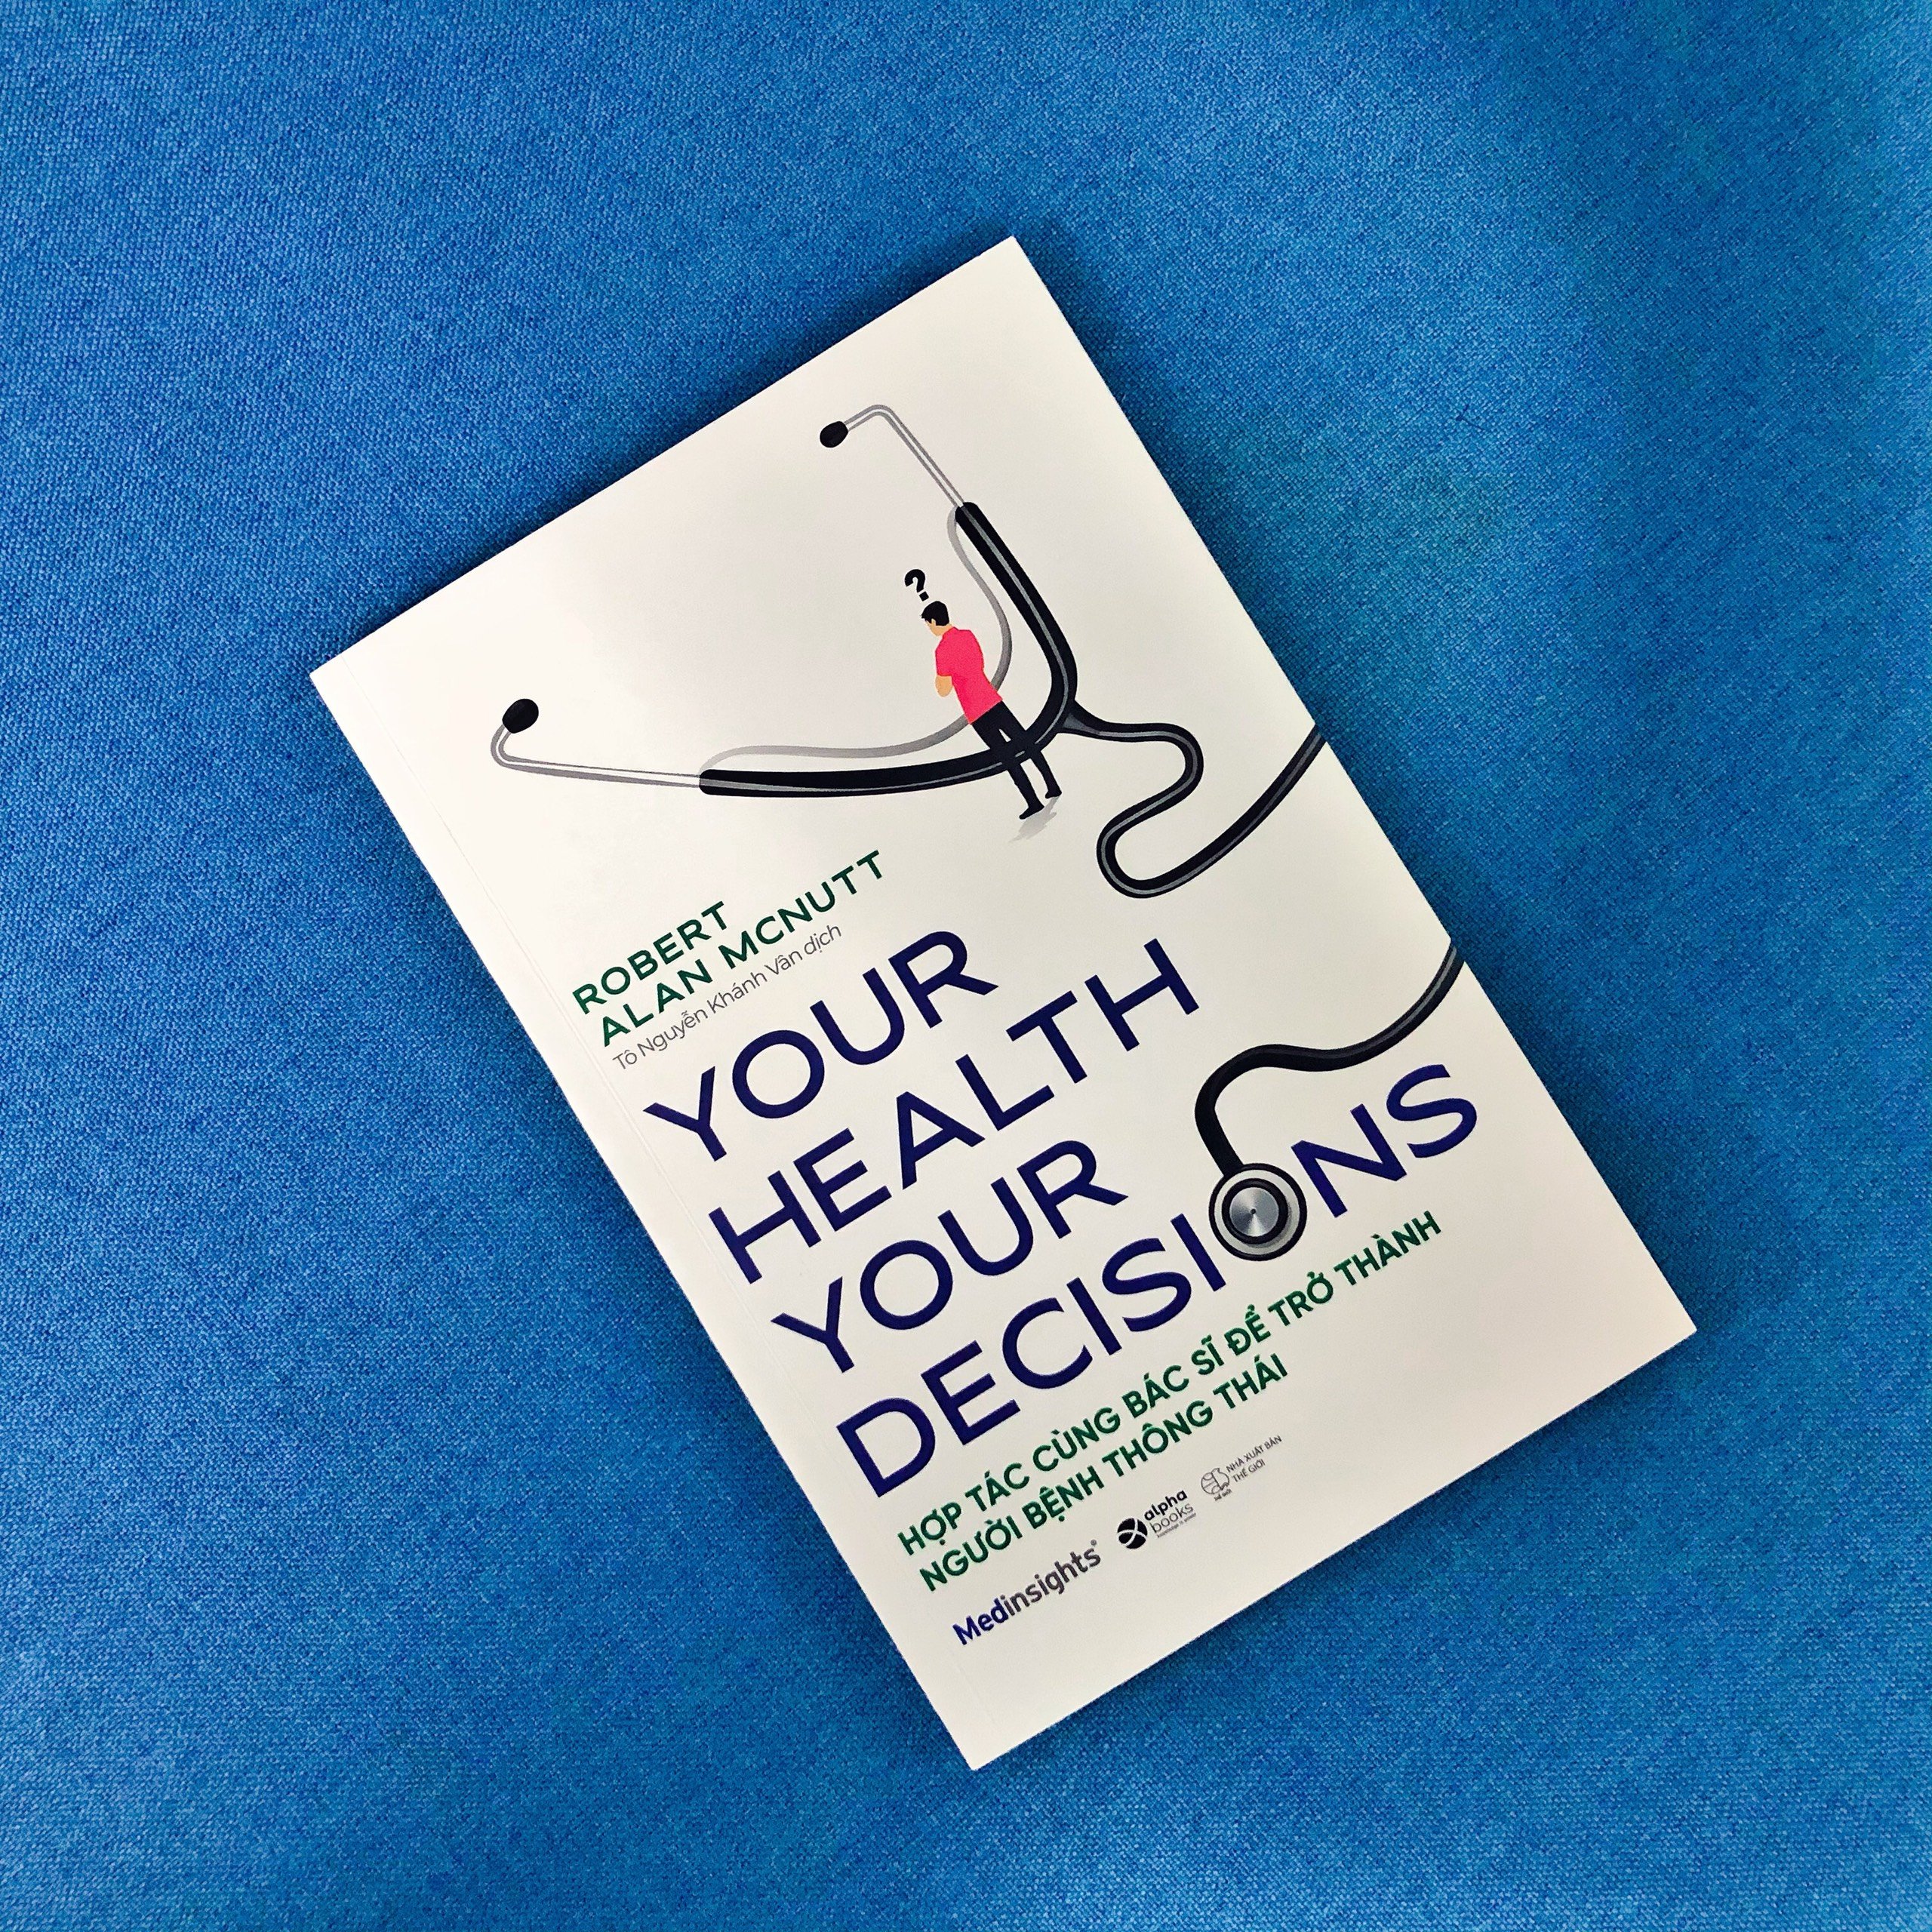 Combo 3 cuốn: Vắc-xin: Những Điều Cần Biết Về Tiêm Chủng + Your Health Your Decision - Hợp Tác Cùng Bác Sĩ Để Trở Thành Người Bệnh Thông Thái + Hoang Mang - Chỉ Dẫn Của Bác Sỹ Để Hiểu Rõ Đúng Sai